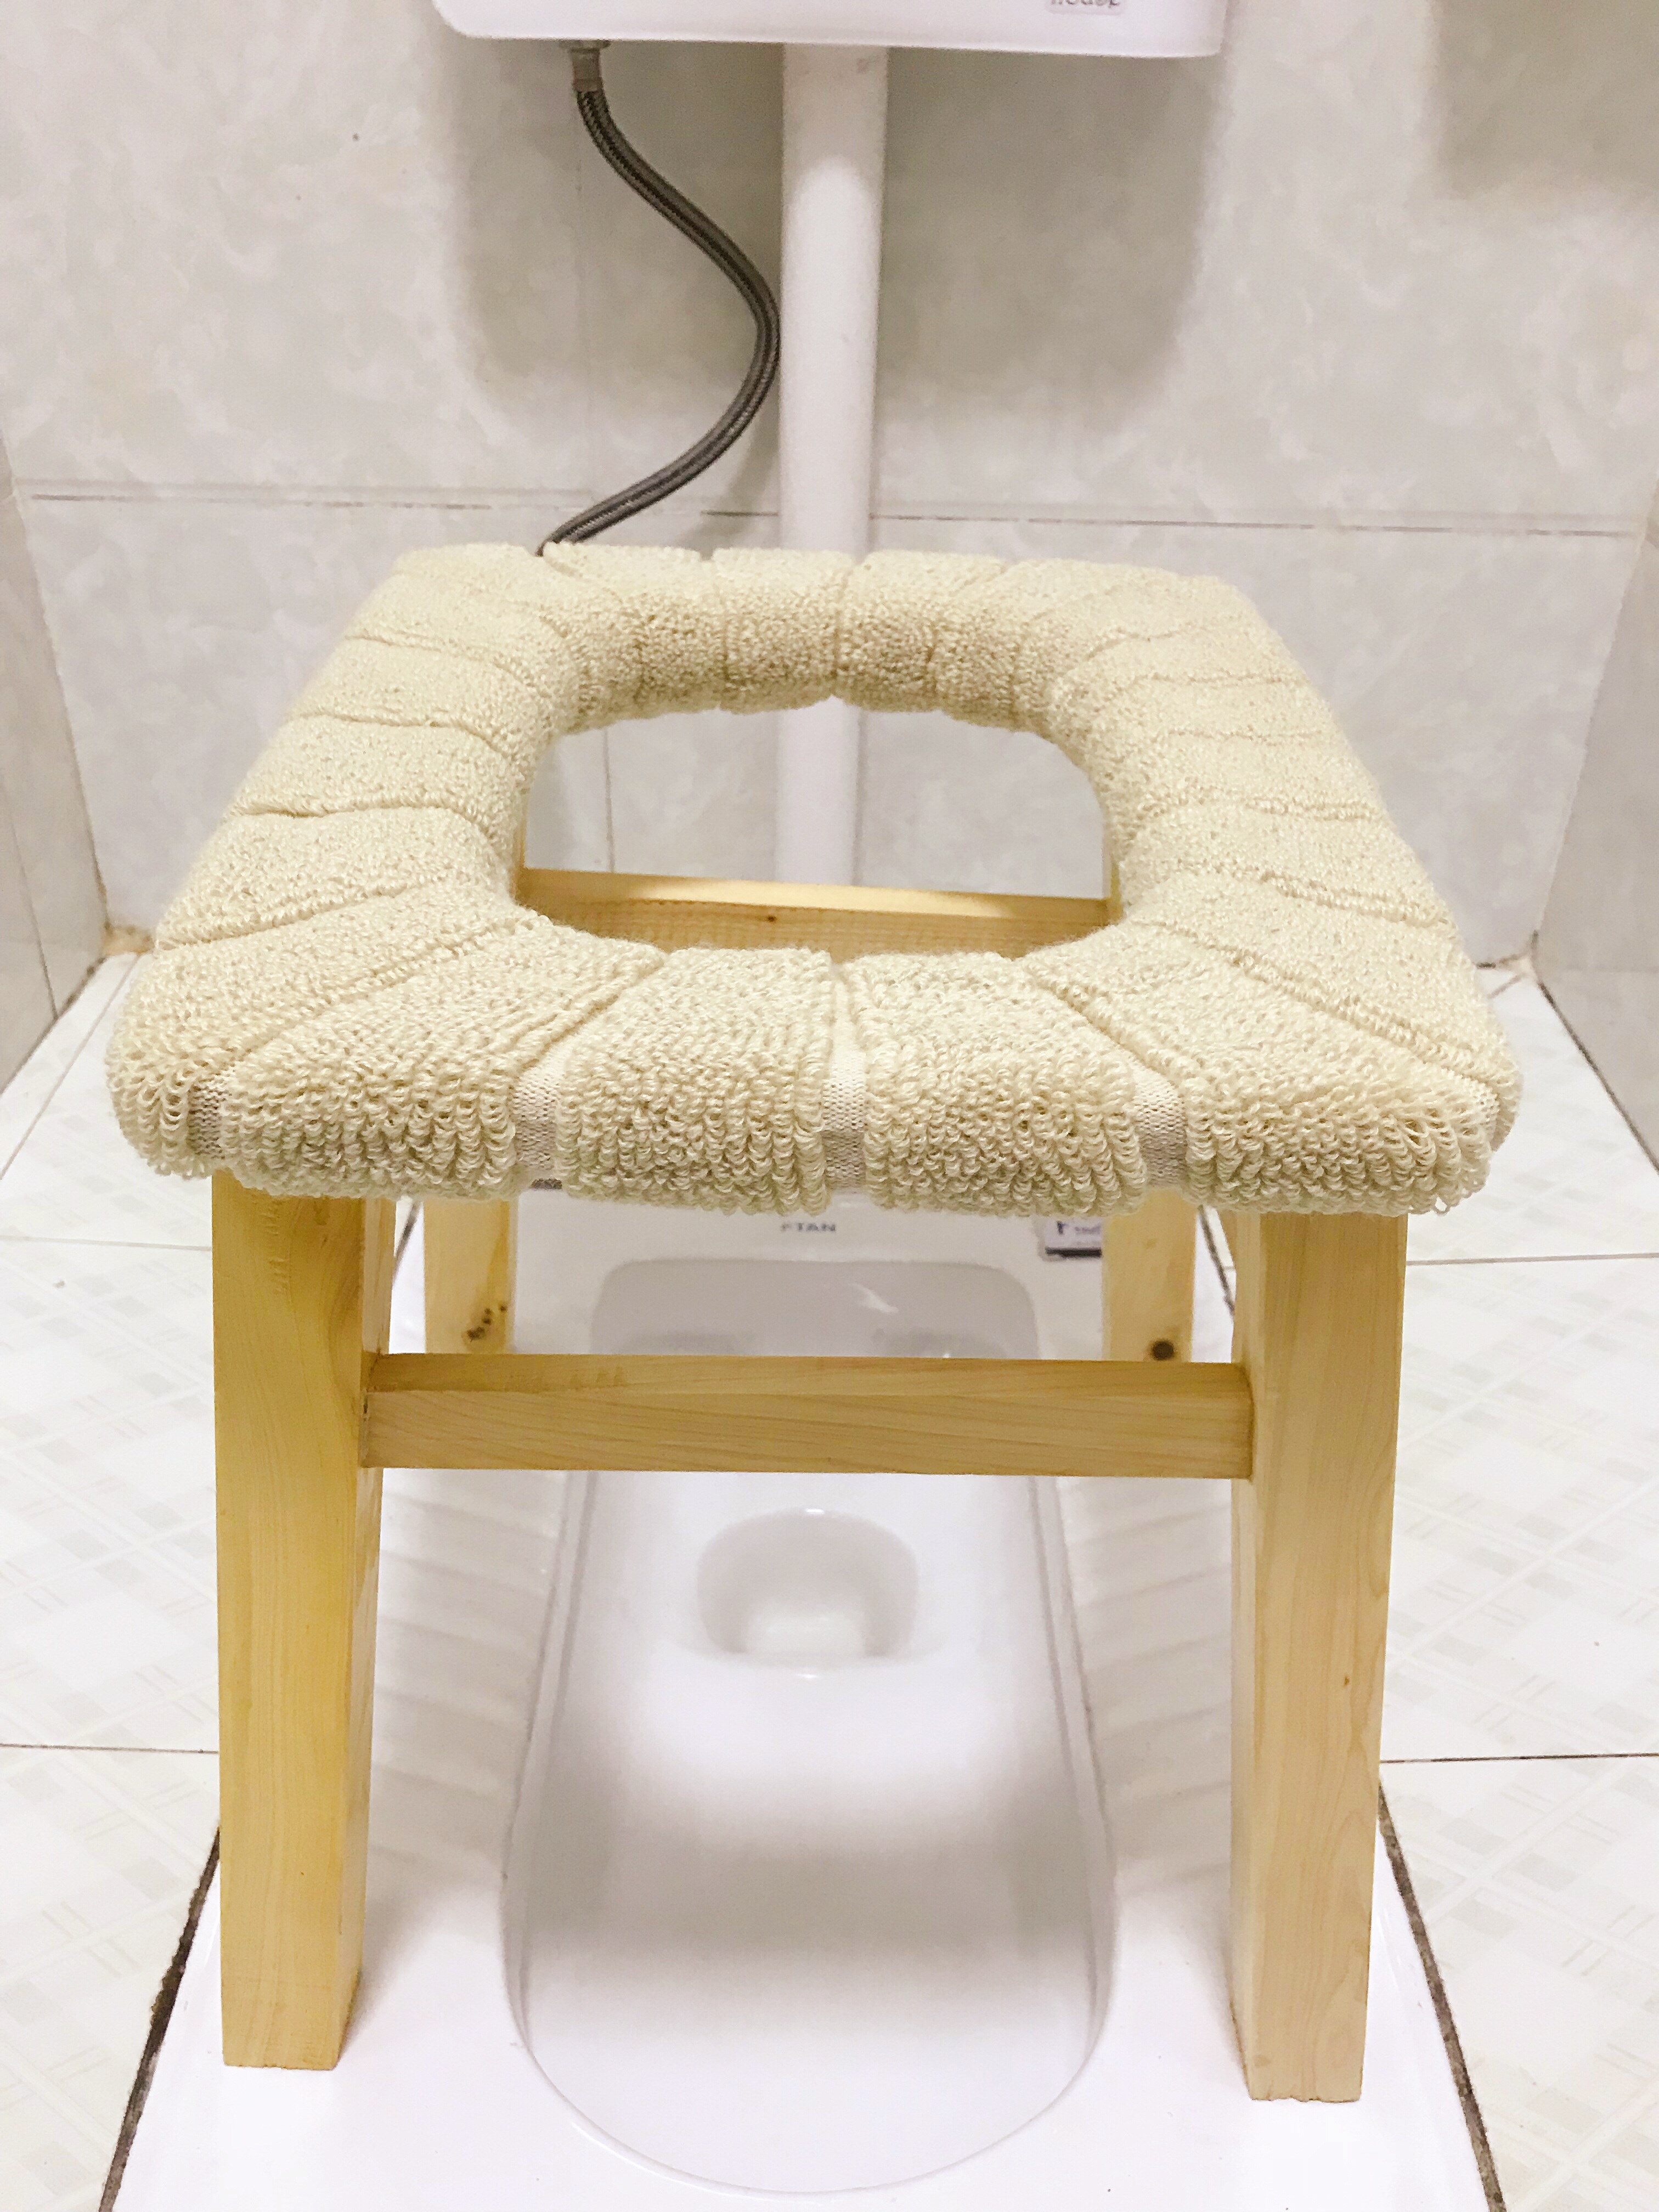 老年人马桶坐便椅农村用加固大便器孕妇家用蹲坑神器如厕椅便携凳